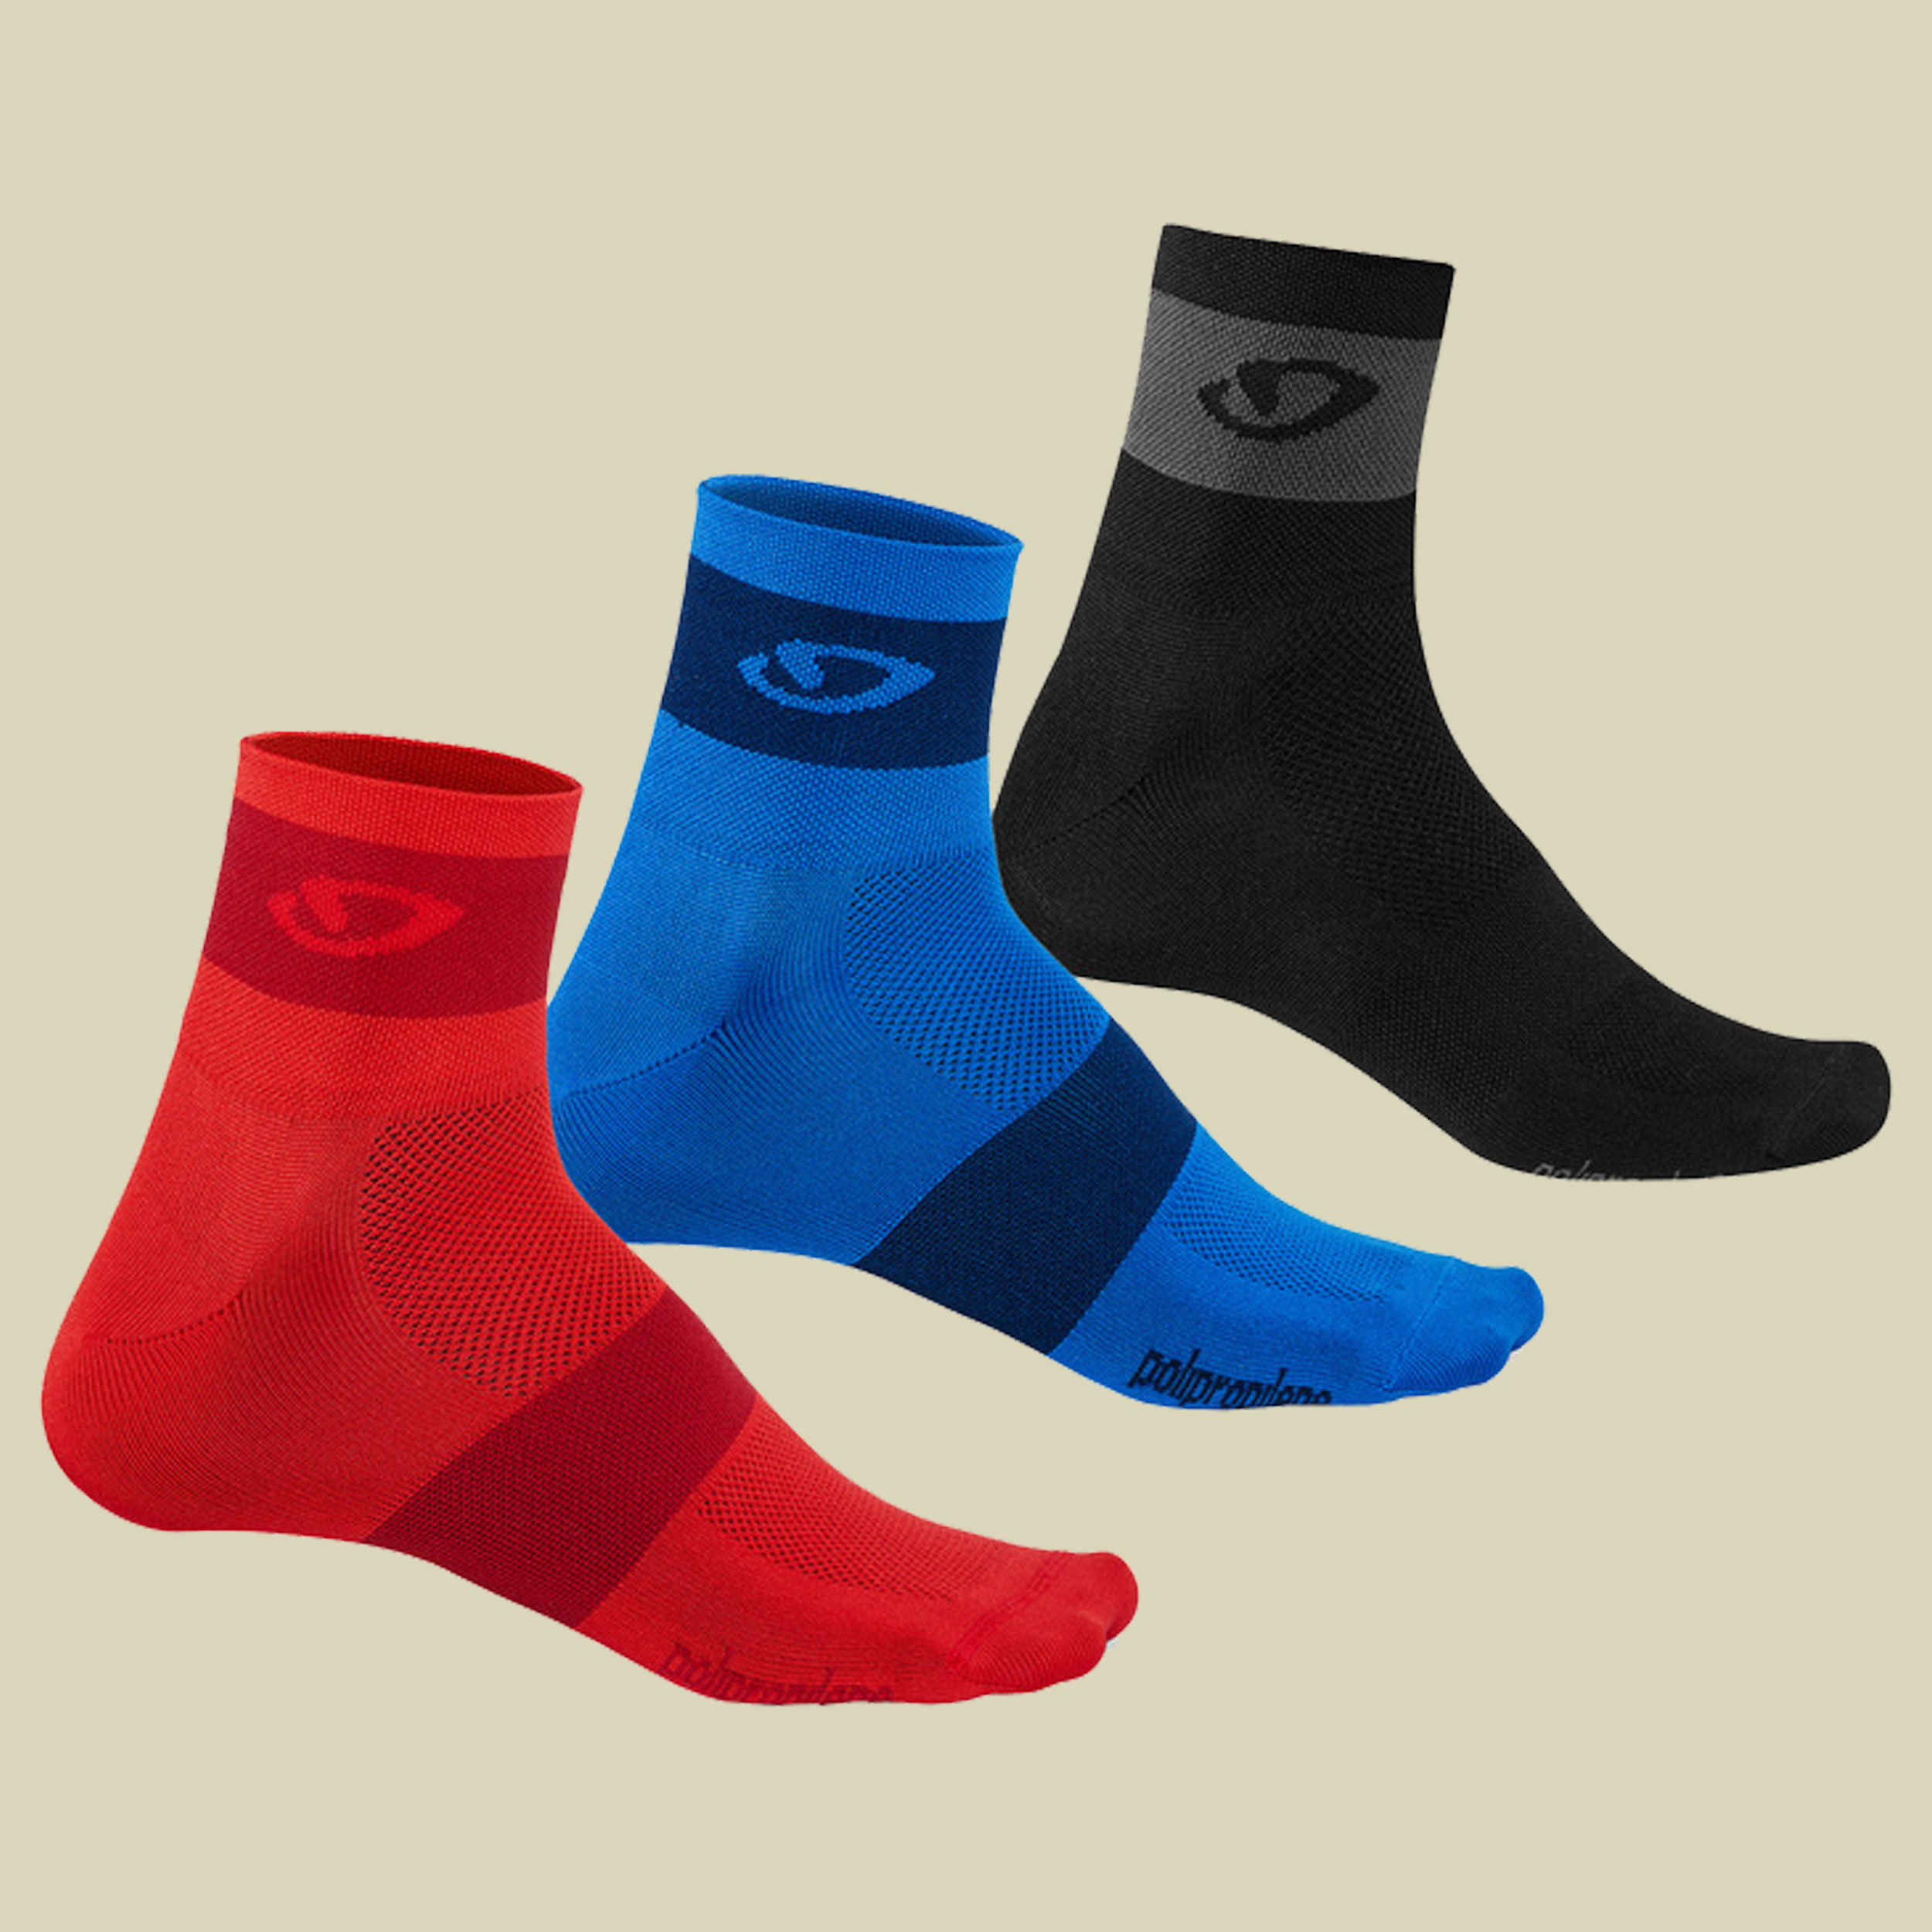 Comp Racer Socks 3er Pack Größe XL Farbe bright red/blue/charcoal